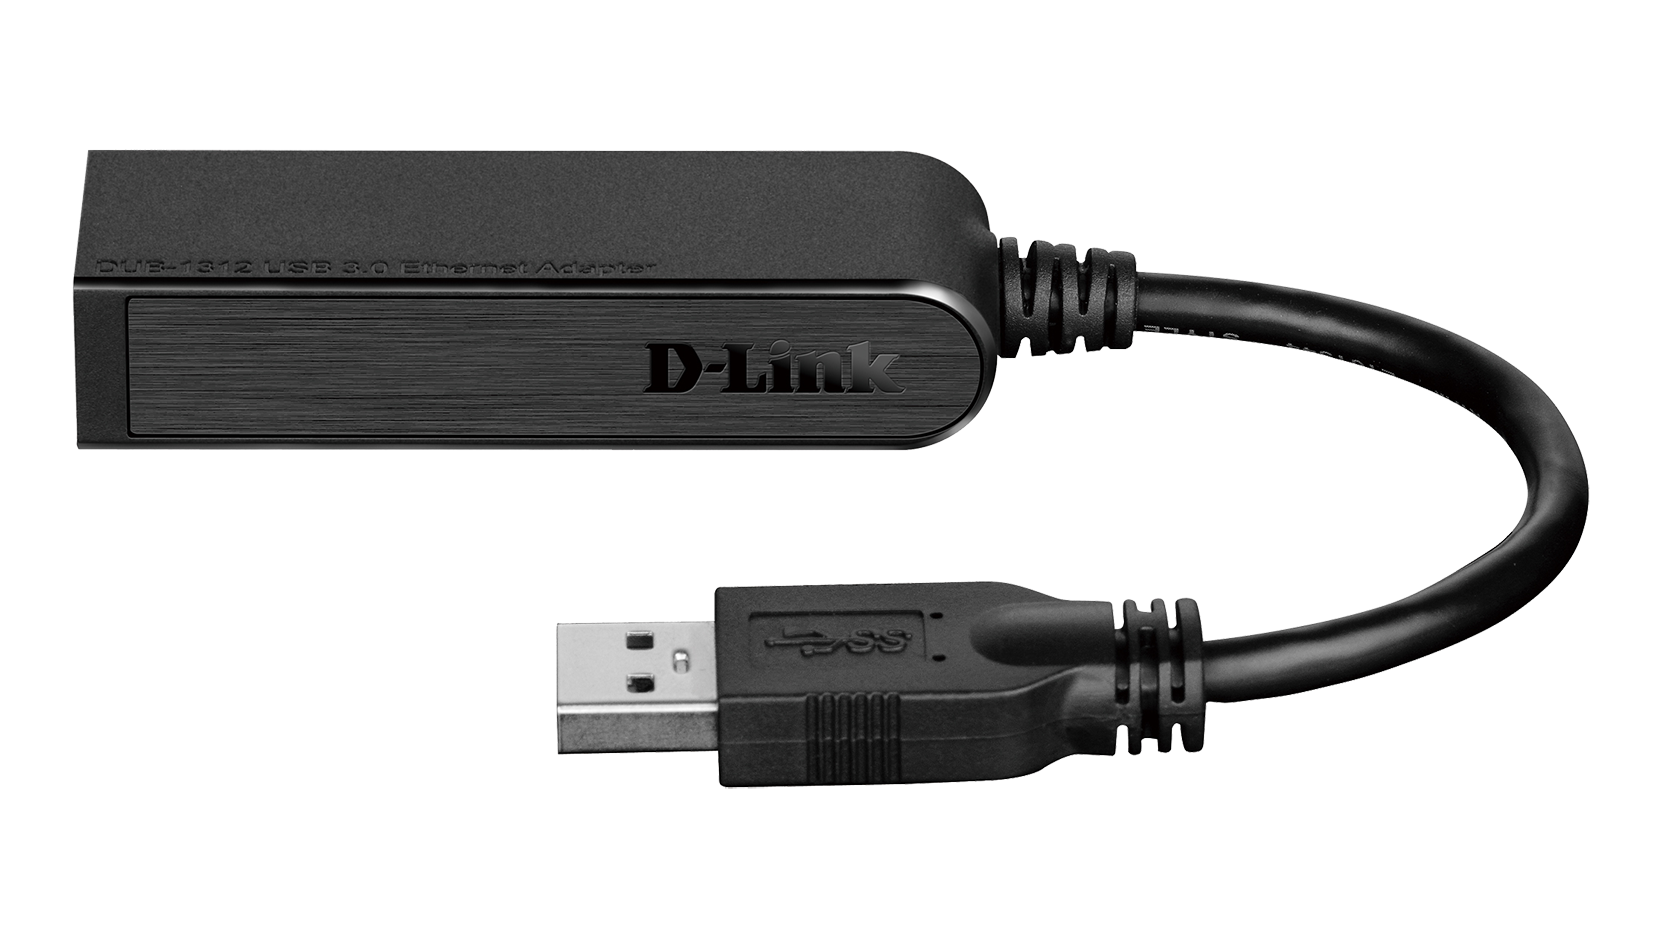 D-Link USB Kabel für D-Link DWR-730 Ladekabel schwarz 